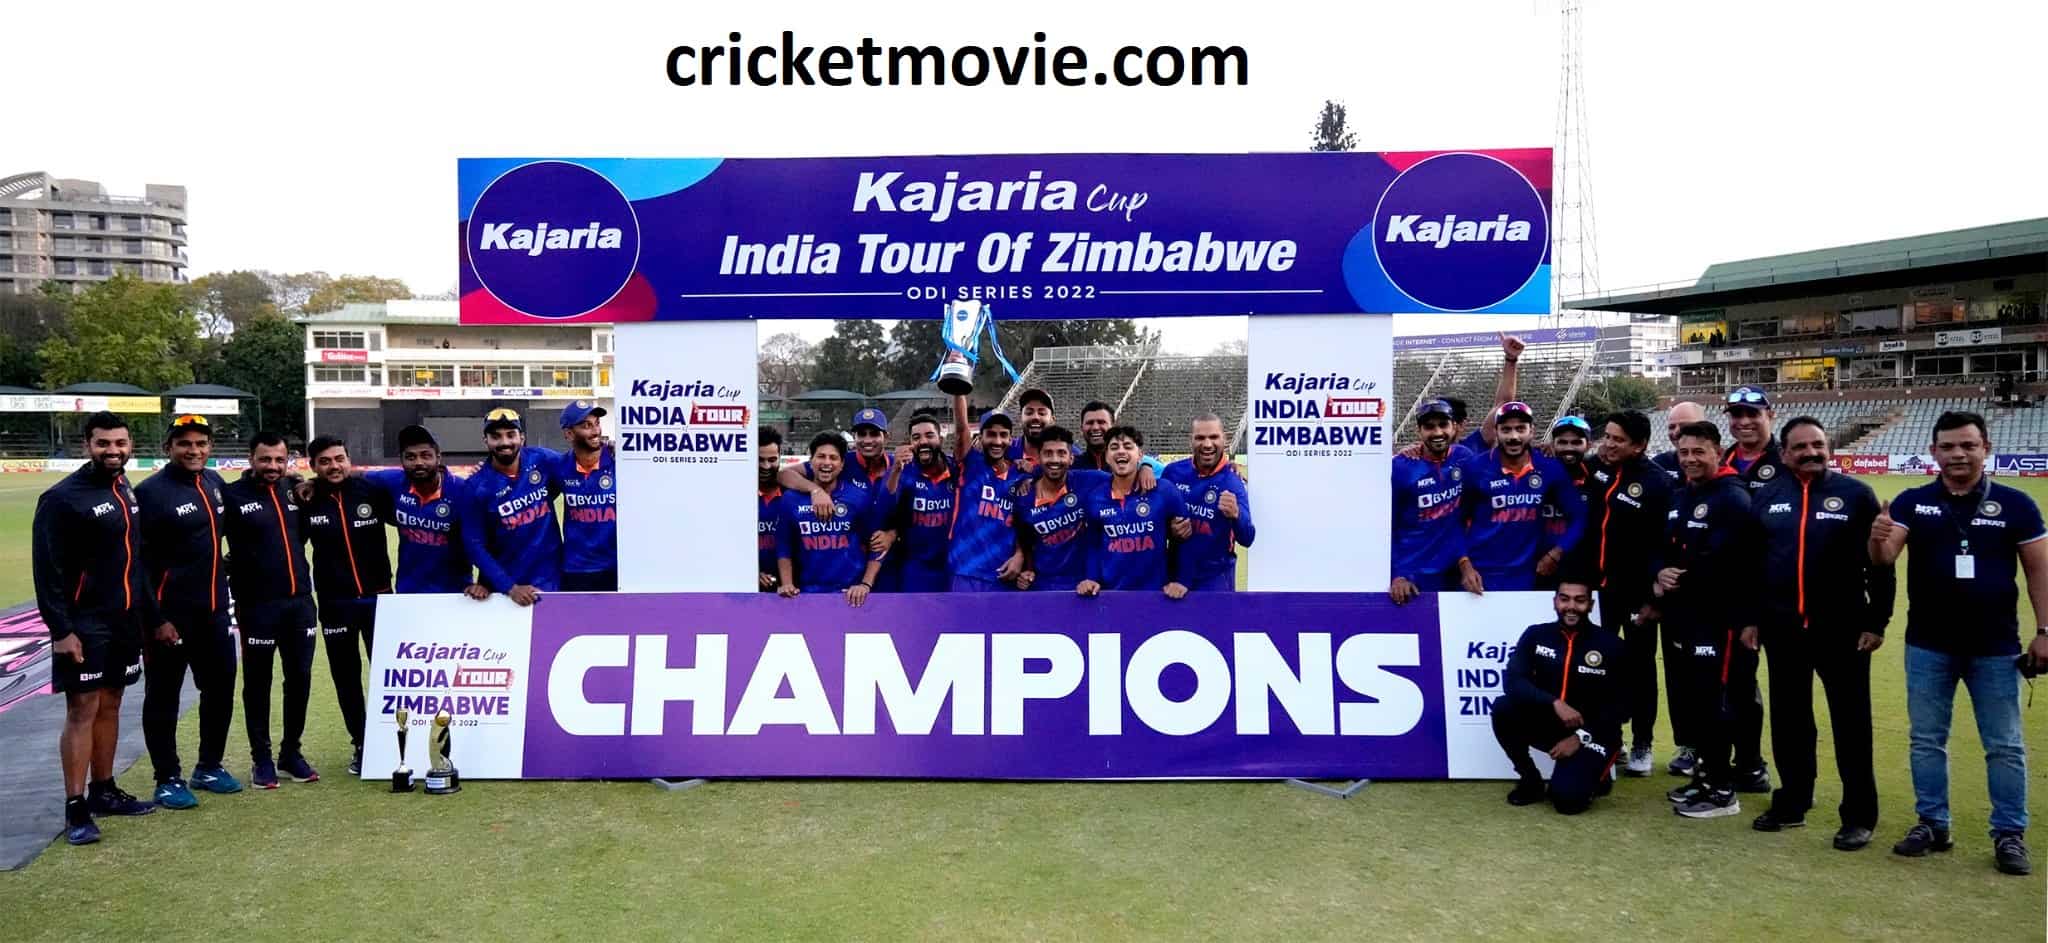 India won ODI series against Zimbabwe-cricketmovie.com